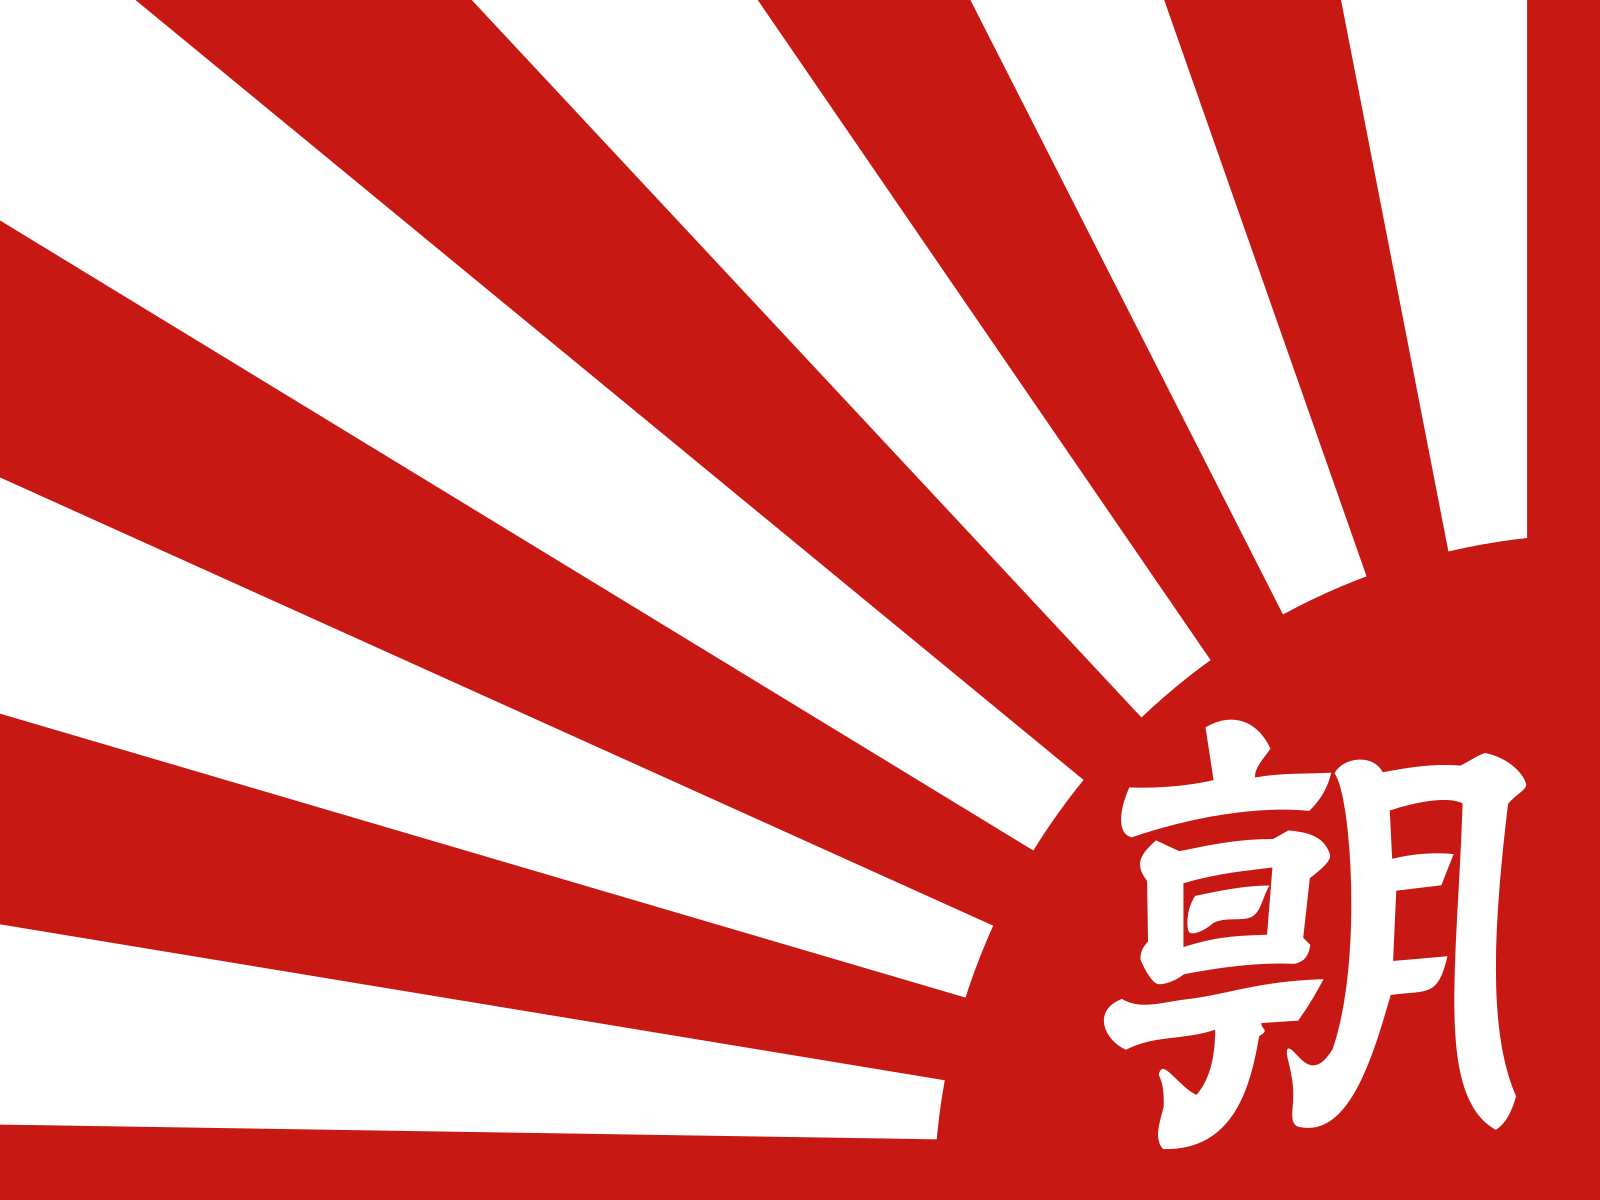 The logo of Asahi Shimbun - Japanese newspaper.